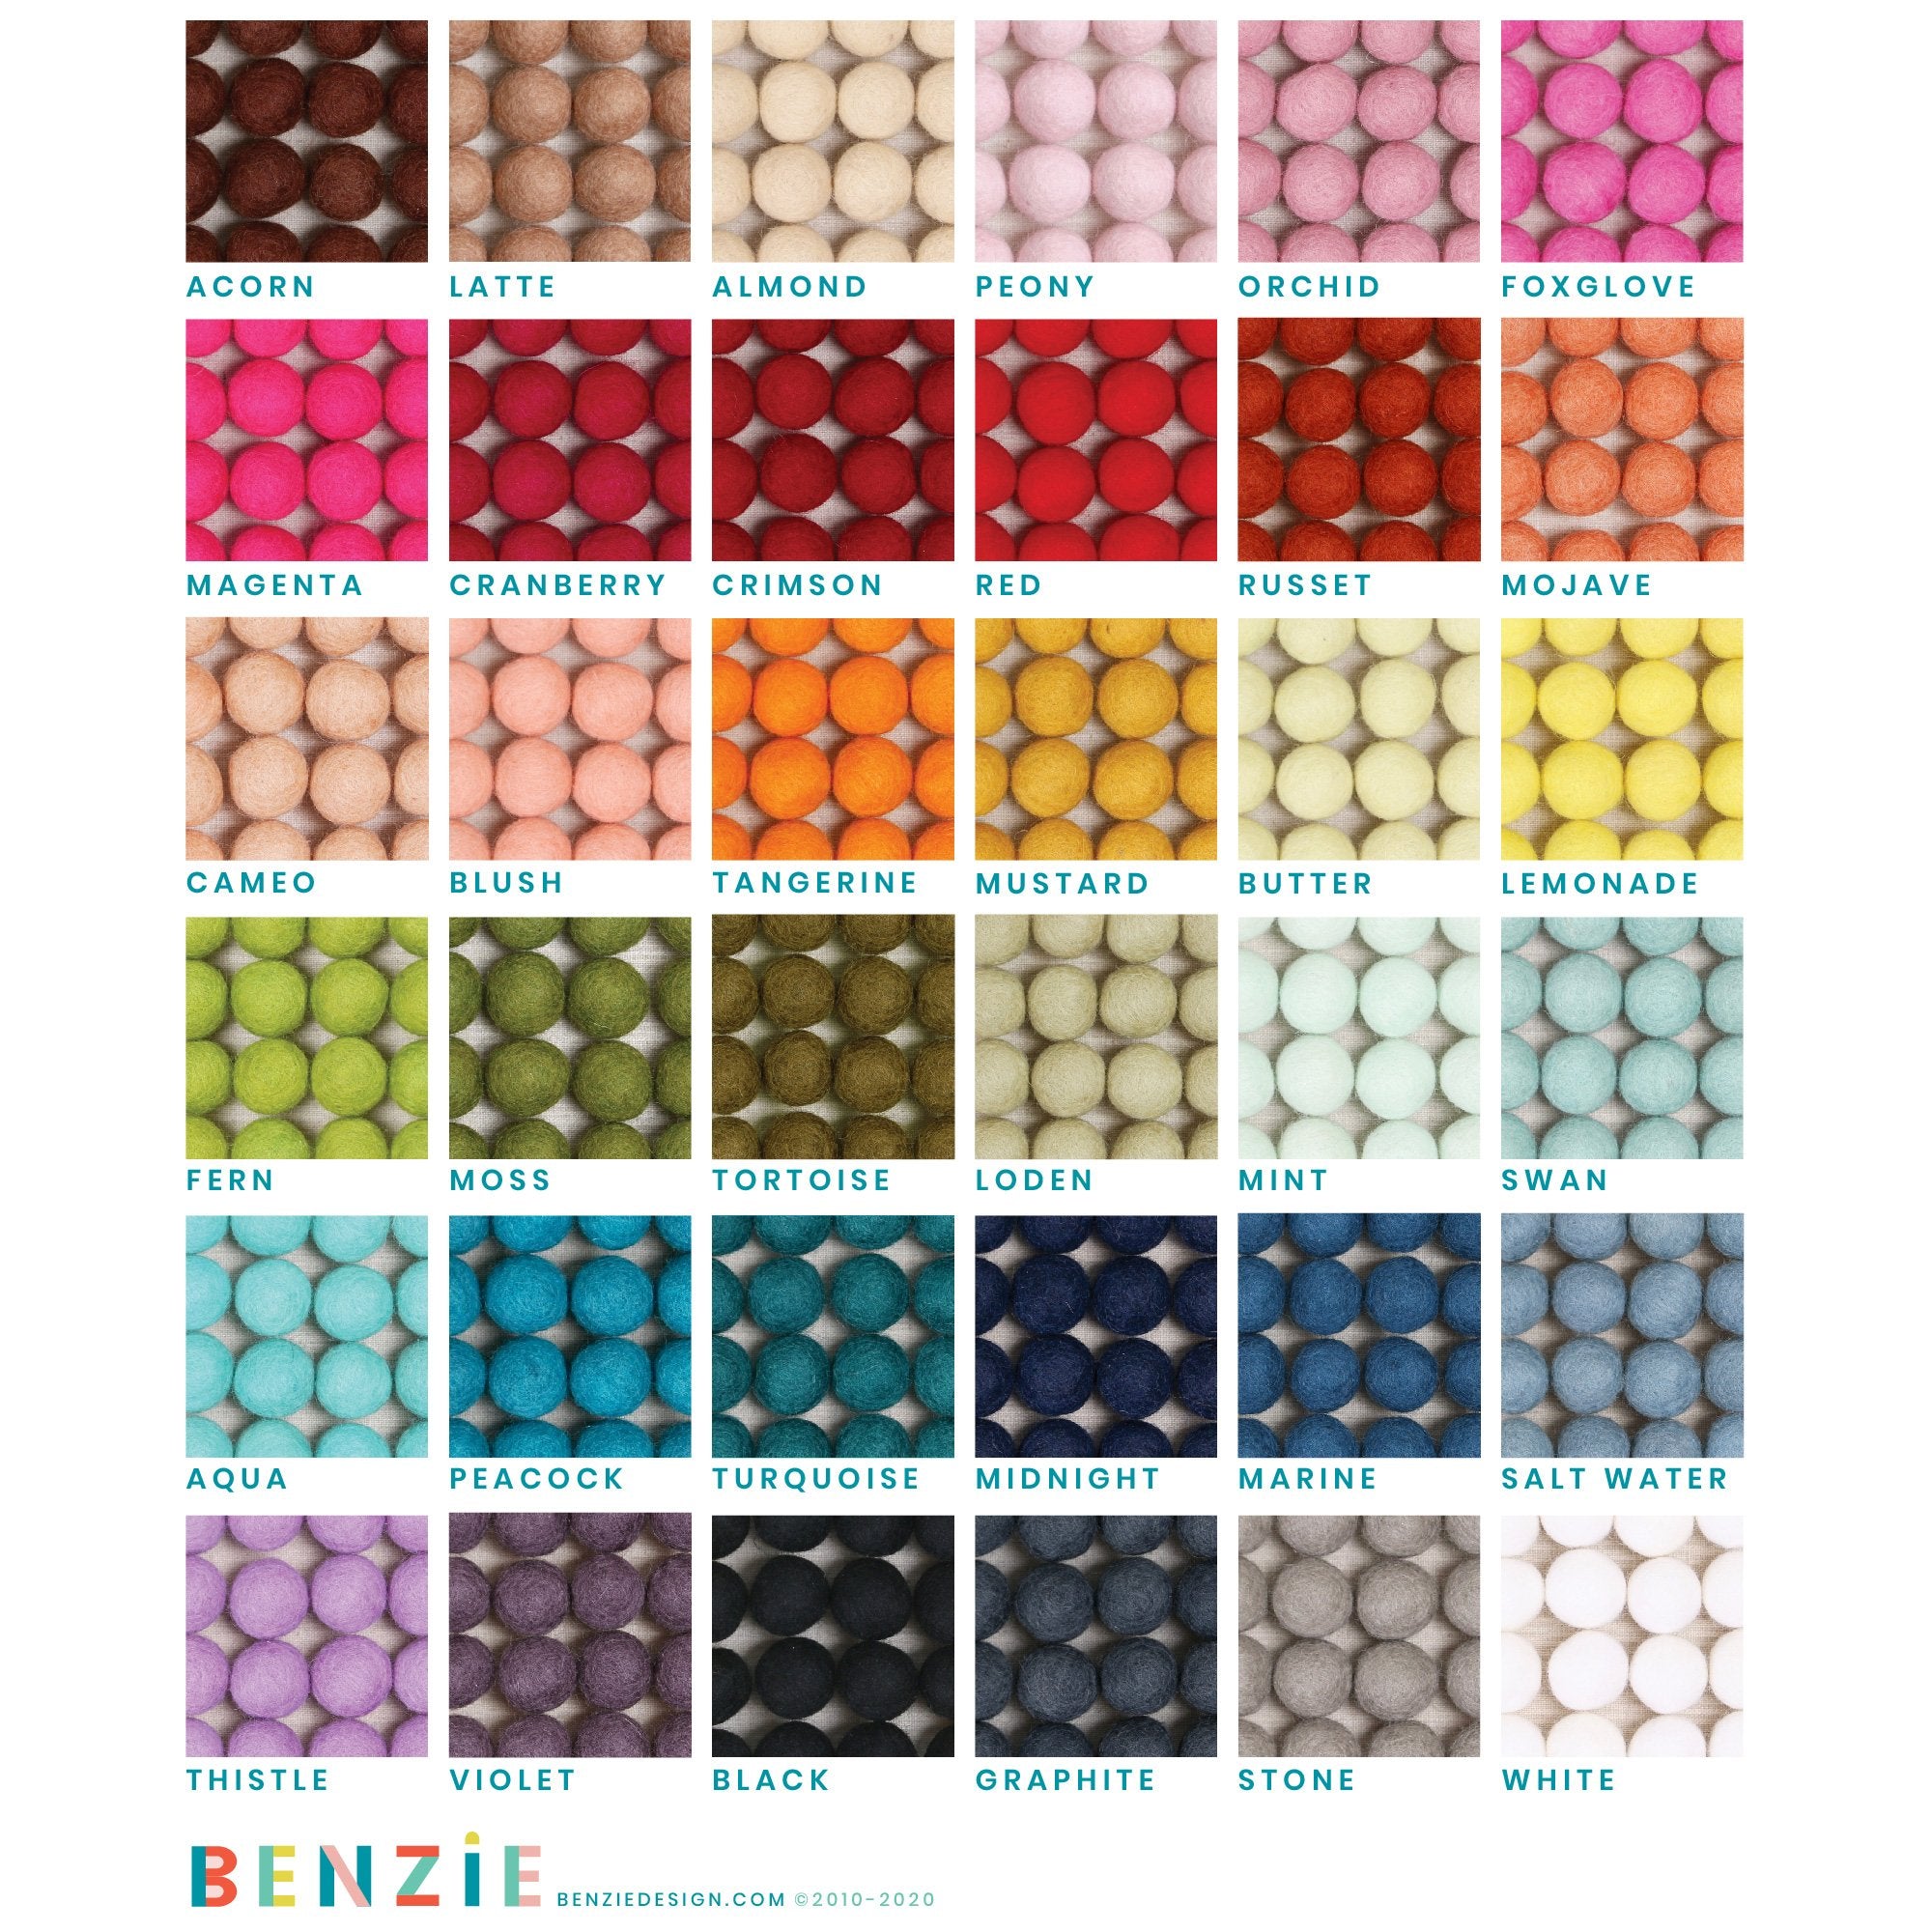 Choose color Multi Color 2 cm Pom Pom Felt Balls Round Beads Craft  Supplies, B4